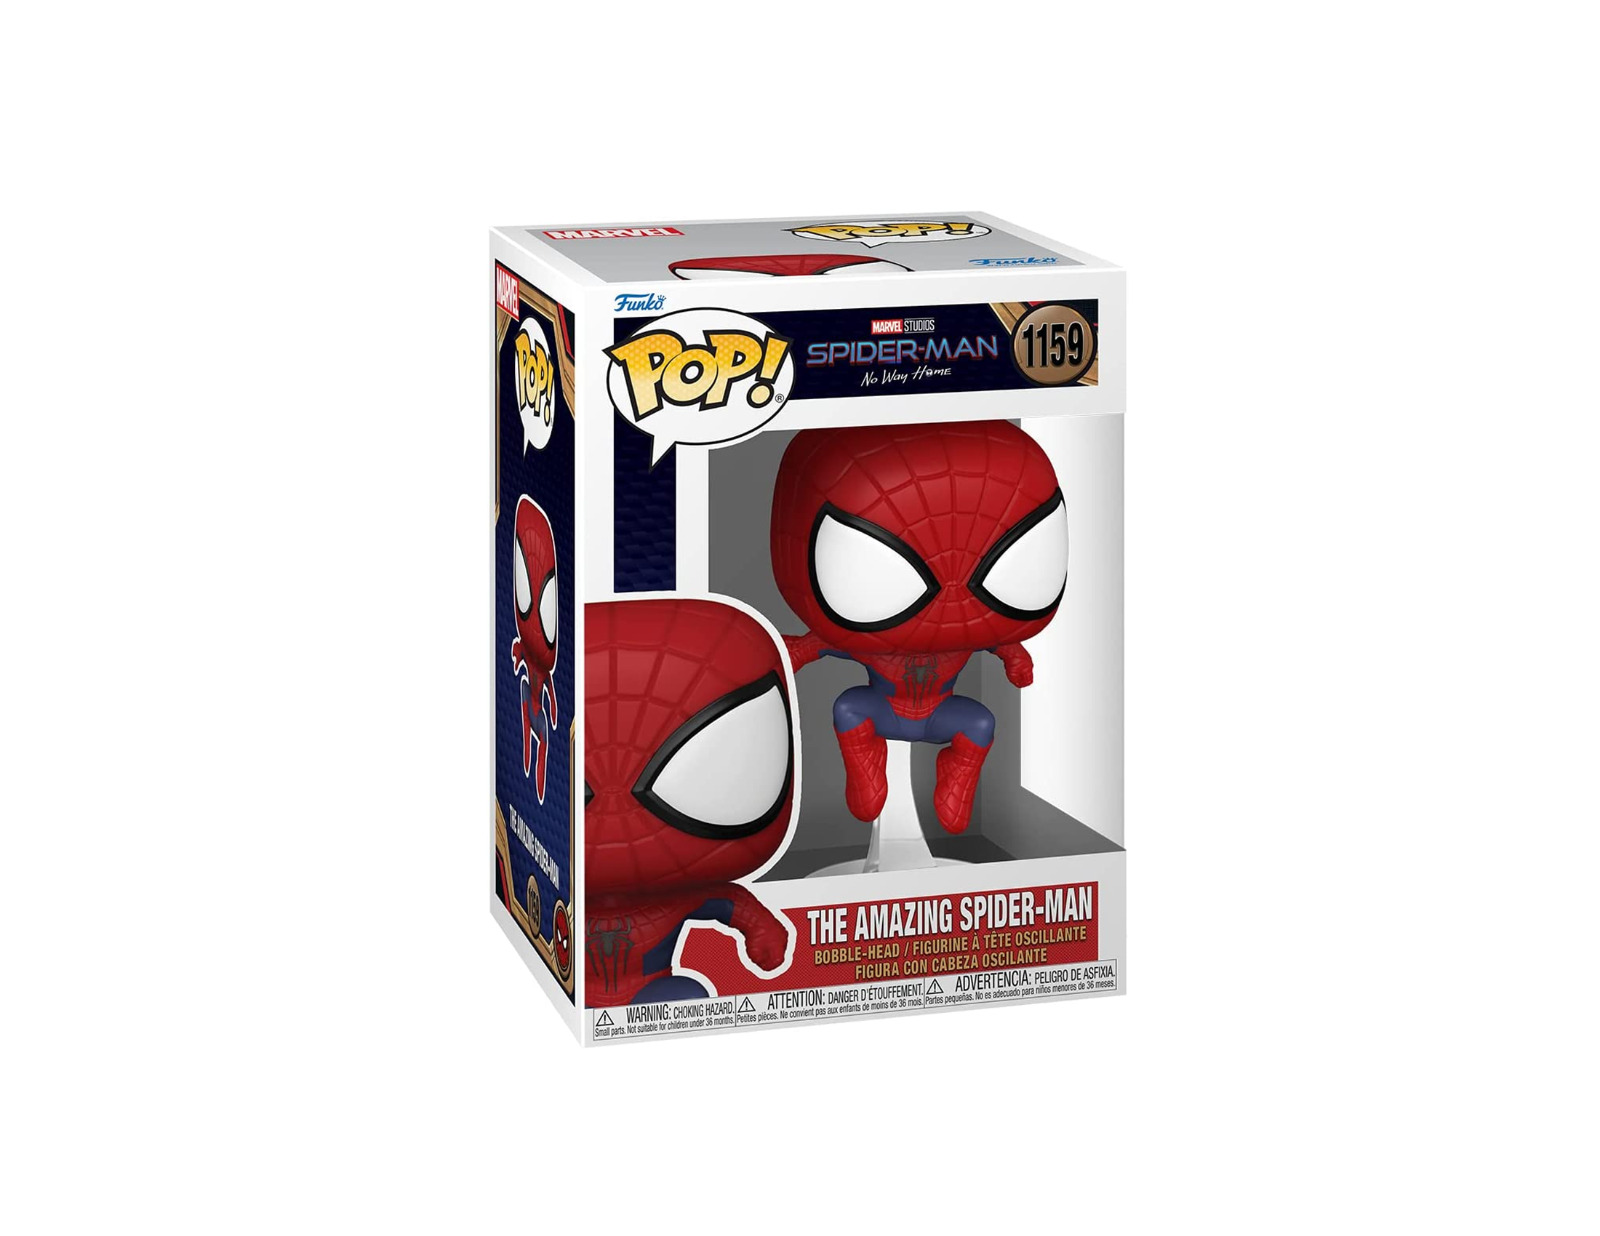 Funko Pop Disney - Marvel - Spider-Man No Way Home - The Amazing Spider-Man #11